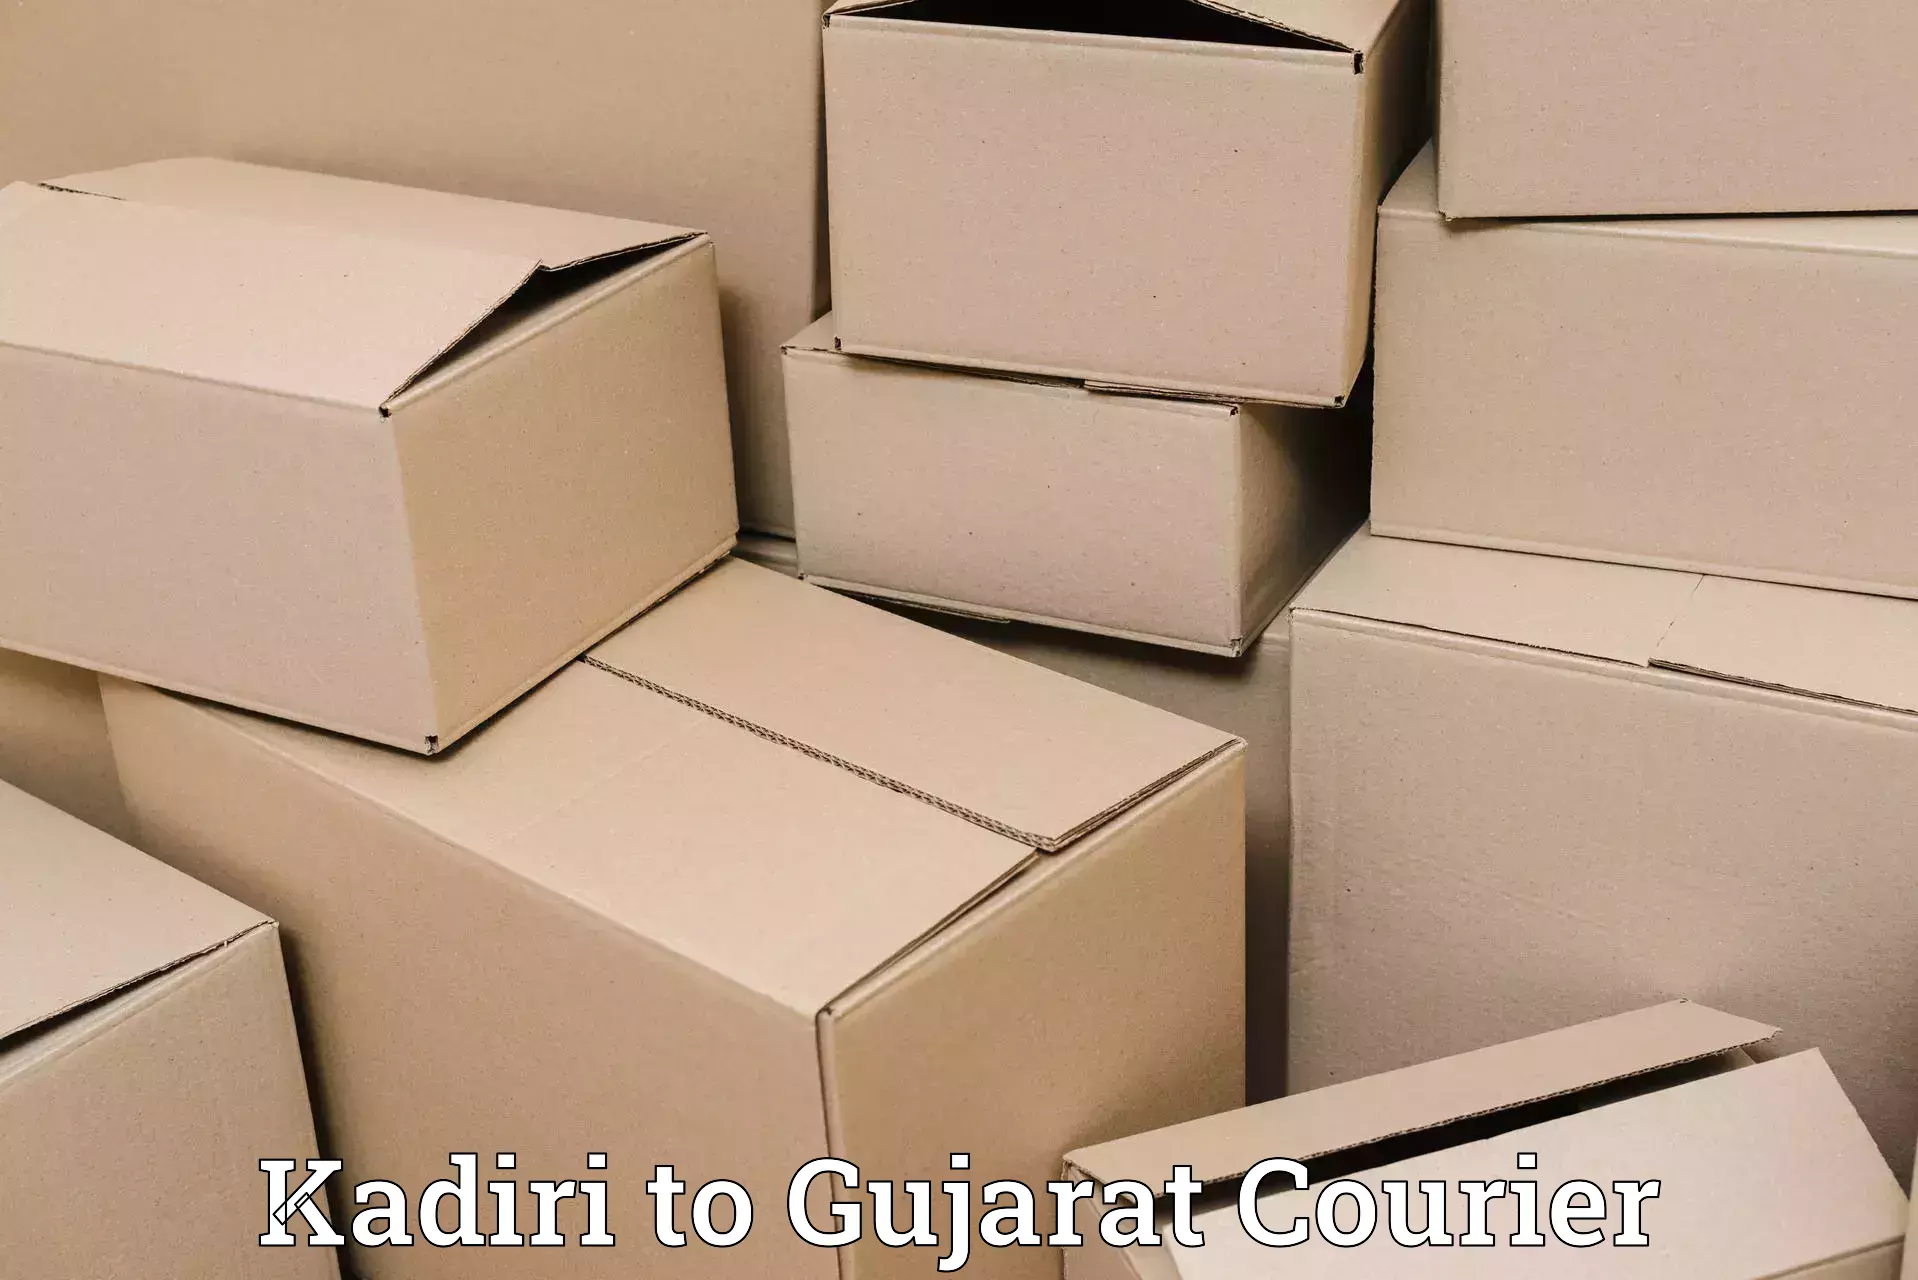 Express delivery solutions Kadiri to IIIT Surat